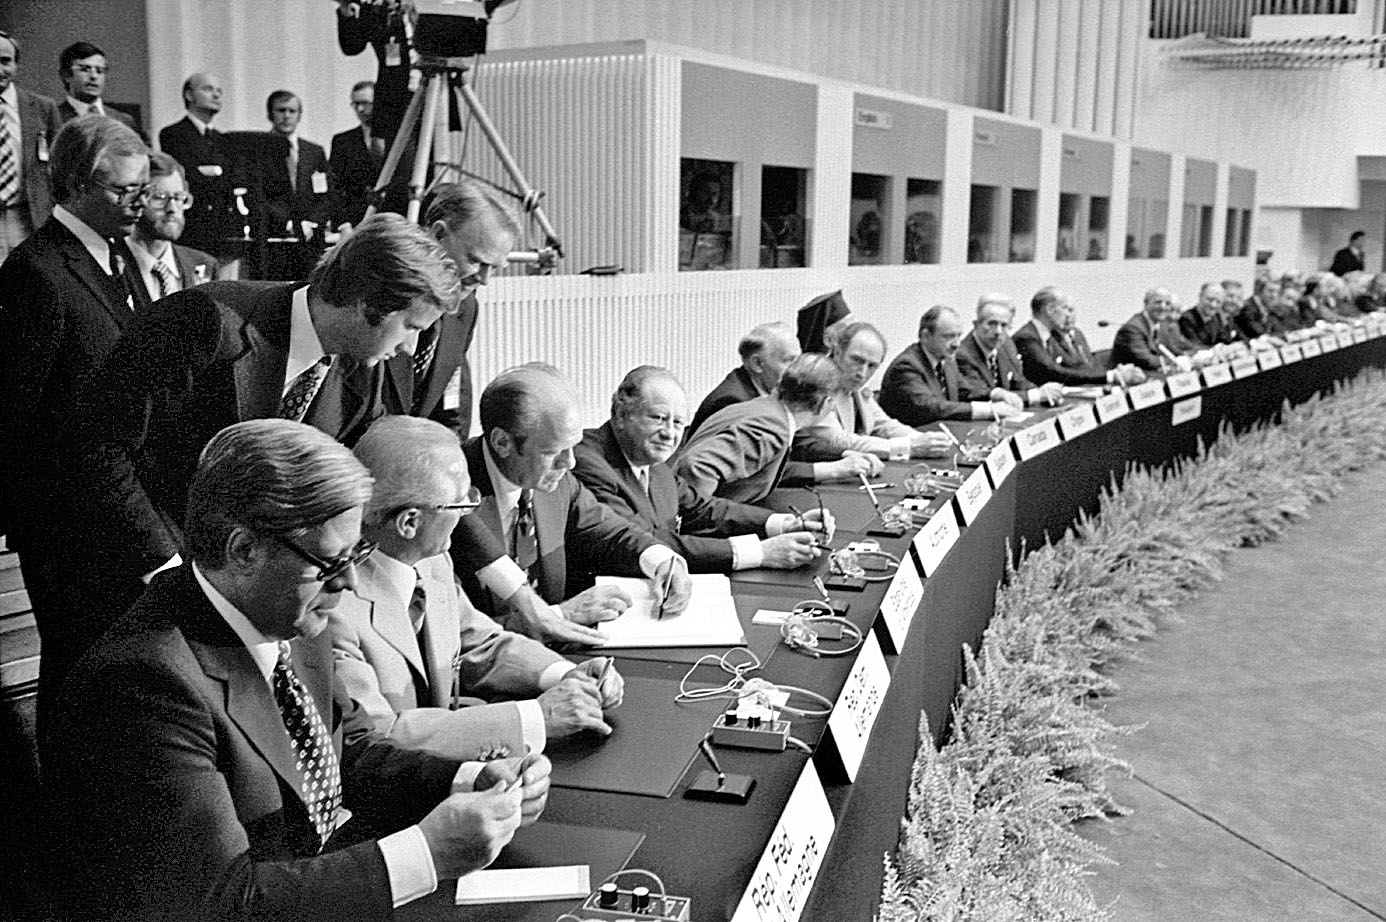 Az aláírók: Helmut Schmidt (NSZK), Erich Honecker (NDK), Gerald Ford (USA), Bruno Kreisky (Ausztria) és a többiek